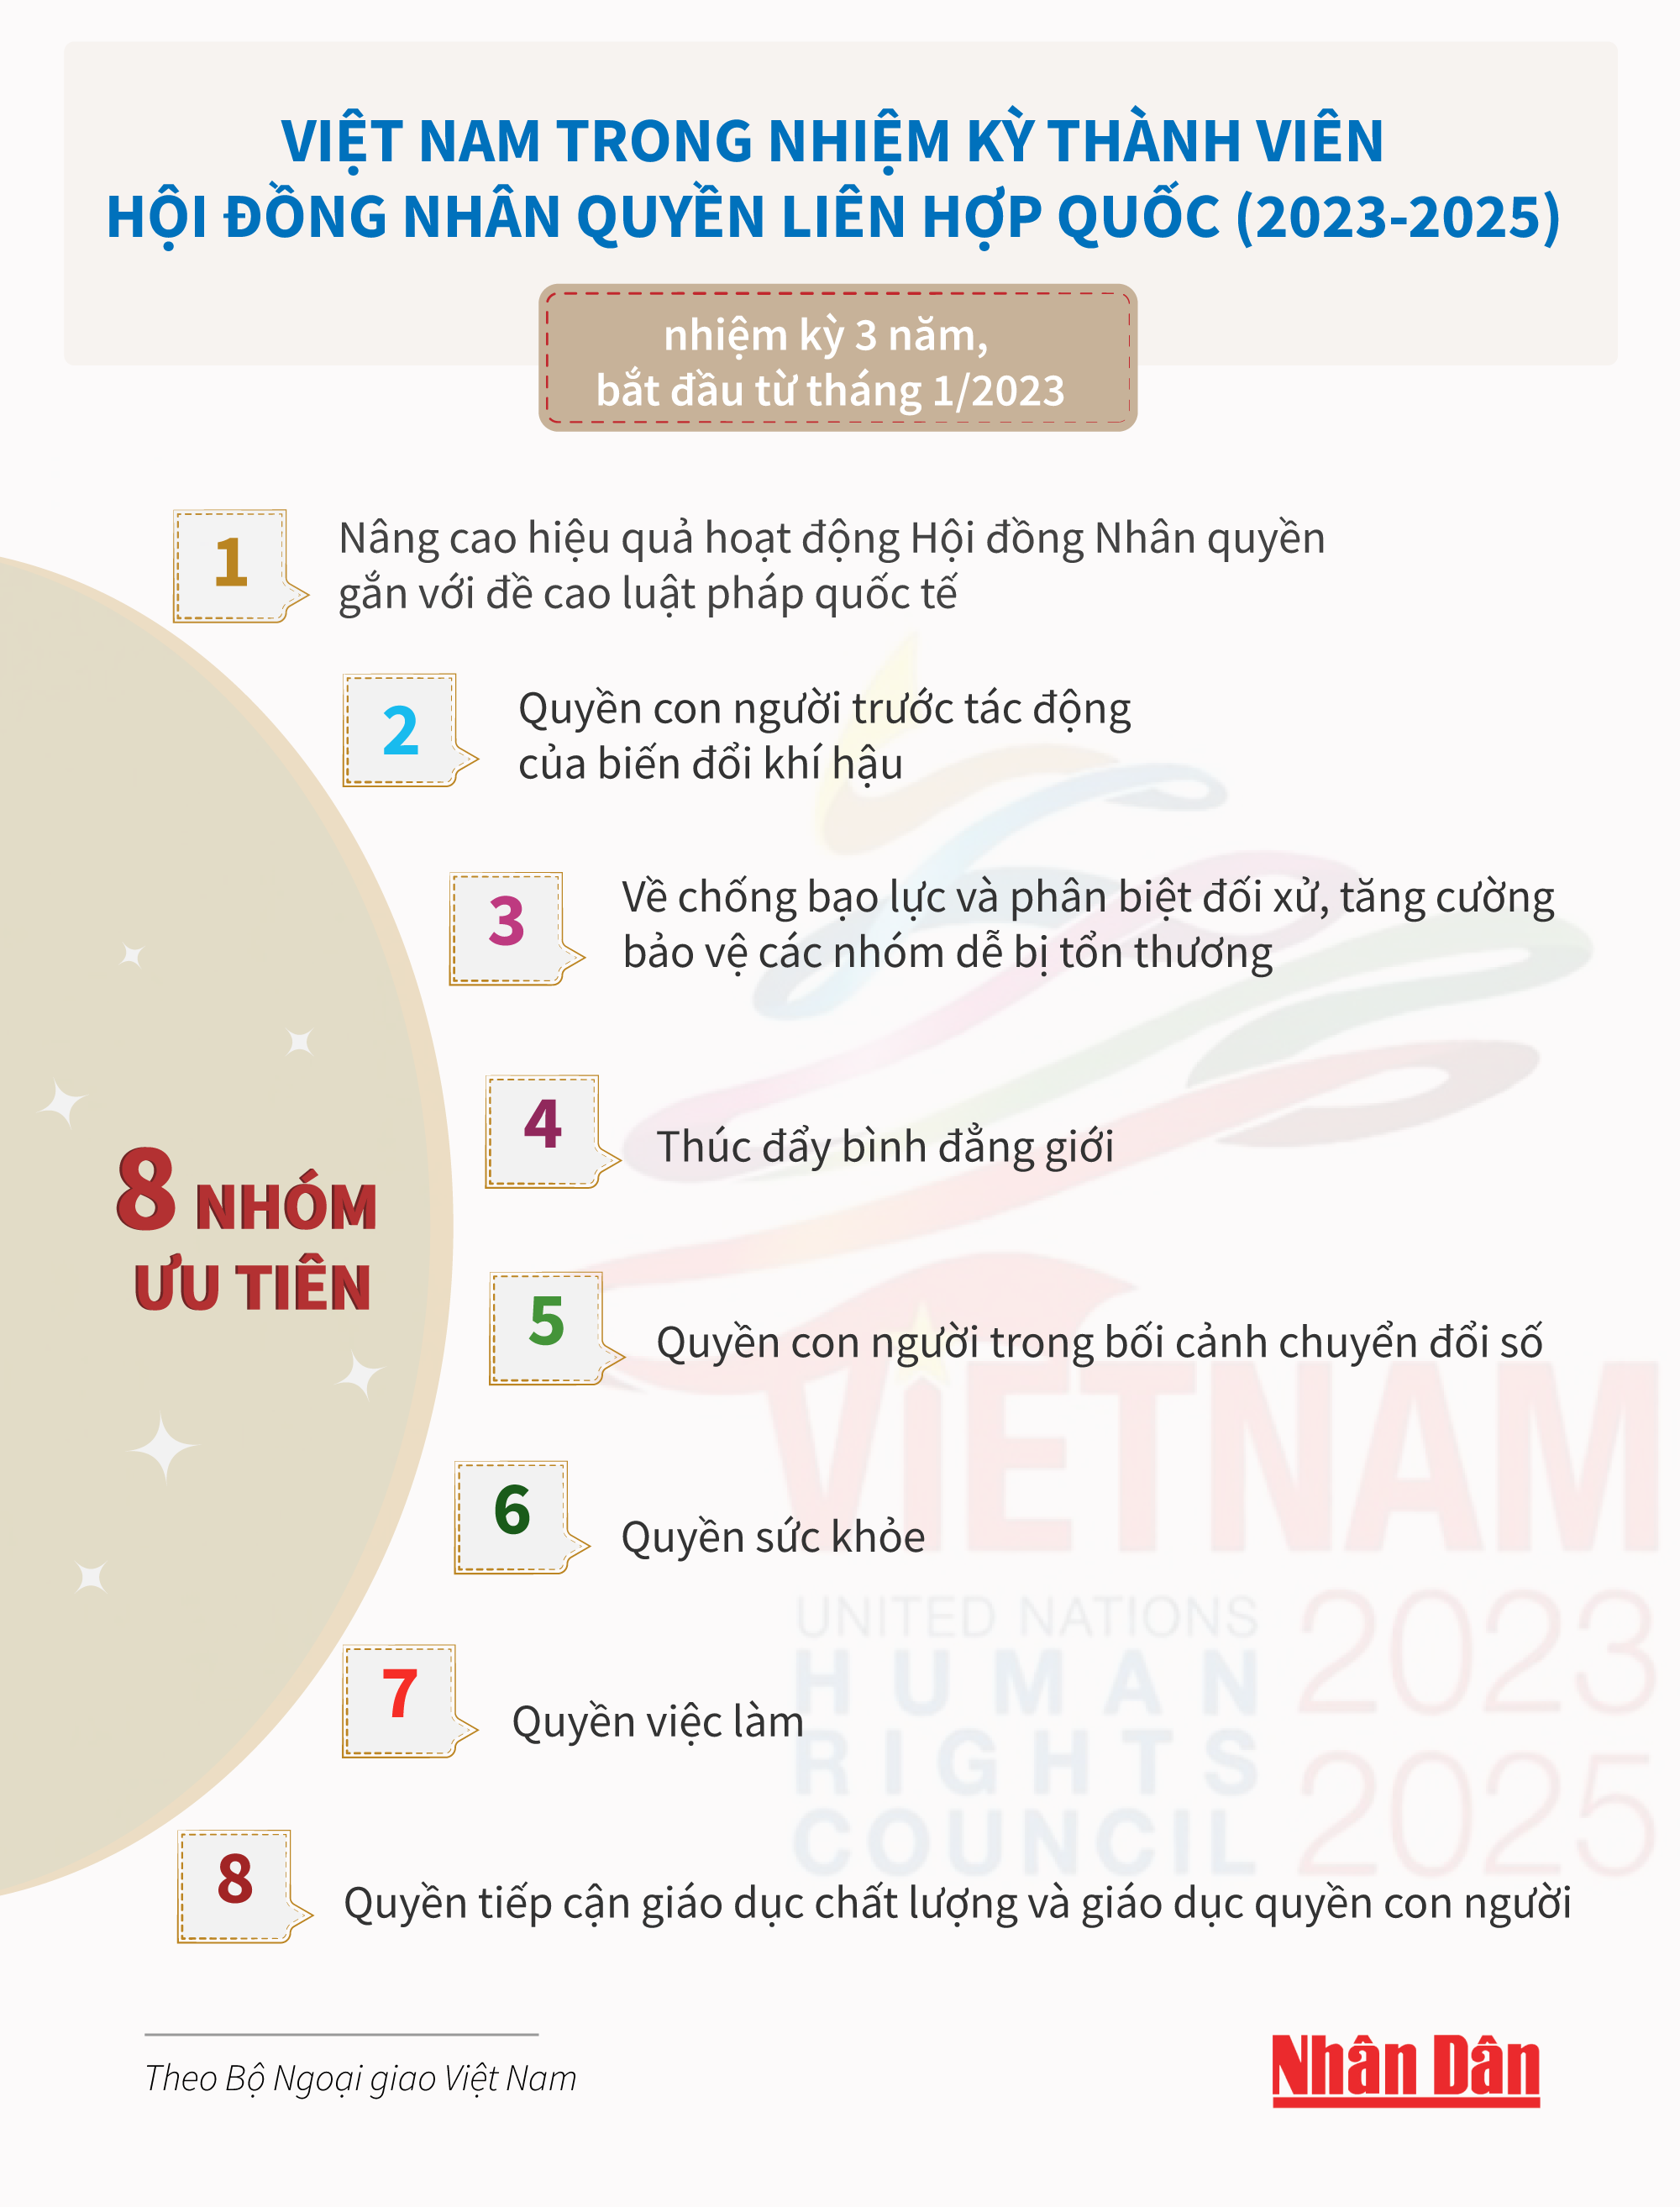 [Infographic] 8 nhóm ưu tiên của Việt Nam trong nhiệm kỳ thành viên Hội đồng Nhân quyền ảnh 1